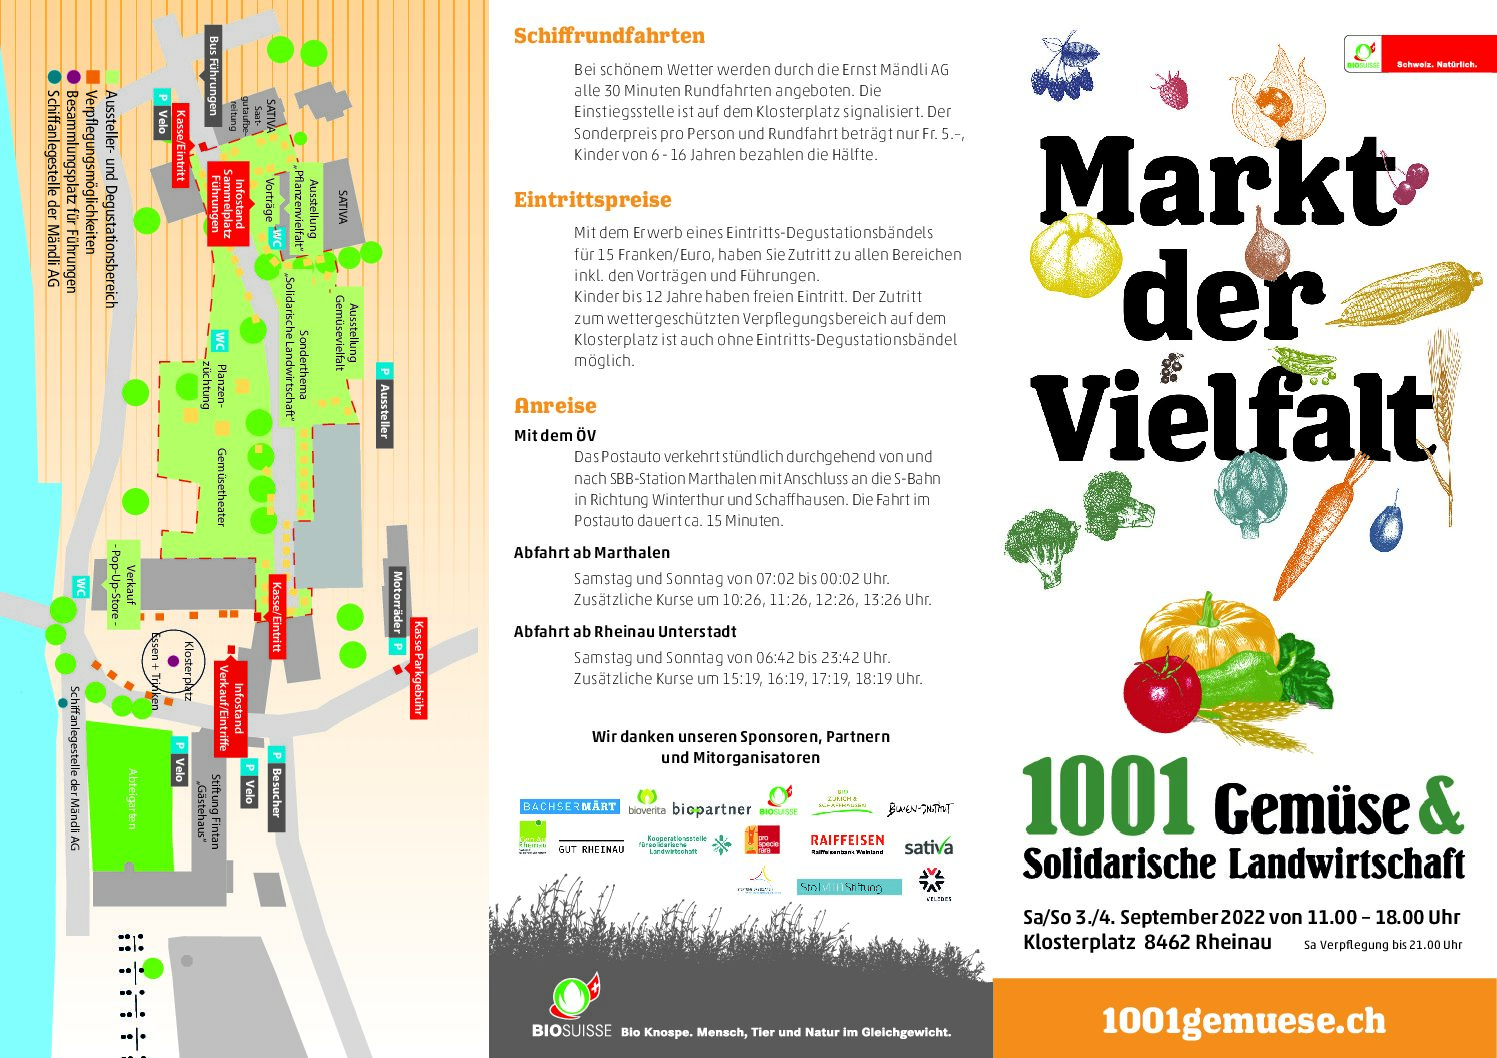 Markt der Vielfalt,  1001 Gemüse & solidarische Landwirtschaft,  Sa/So 3./4. September 2022 von 11.00 – 18.00 Uhr Klosterplatz 8462 Rheinau